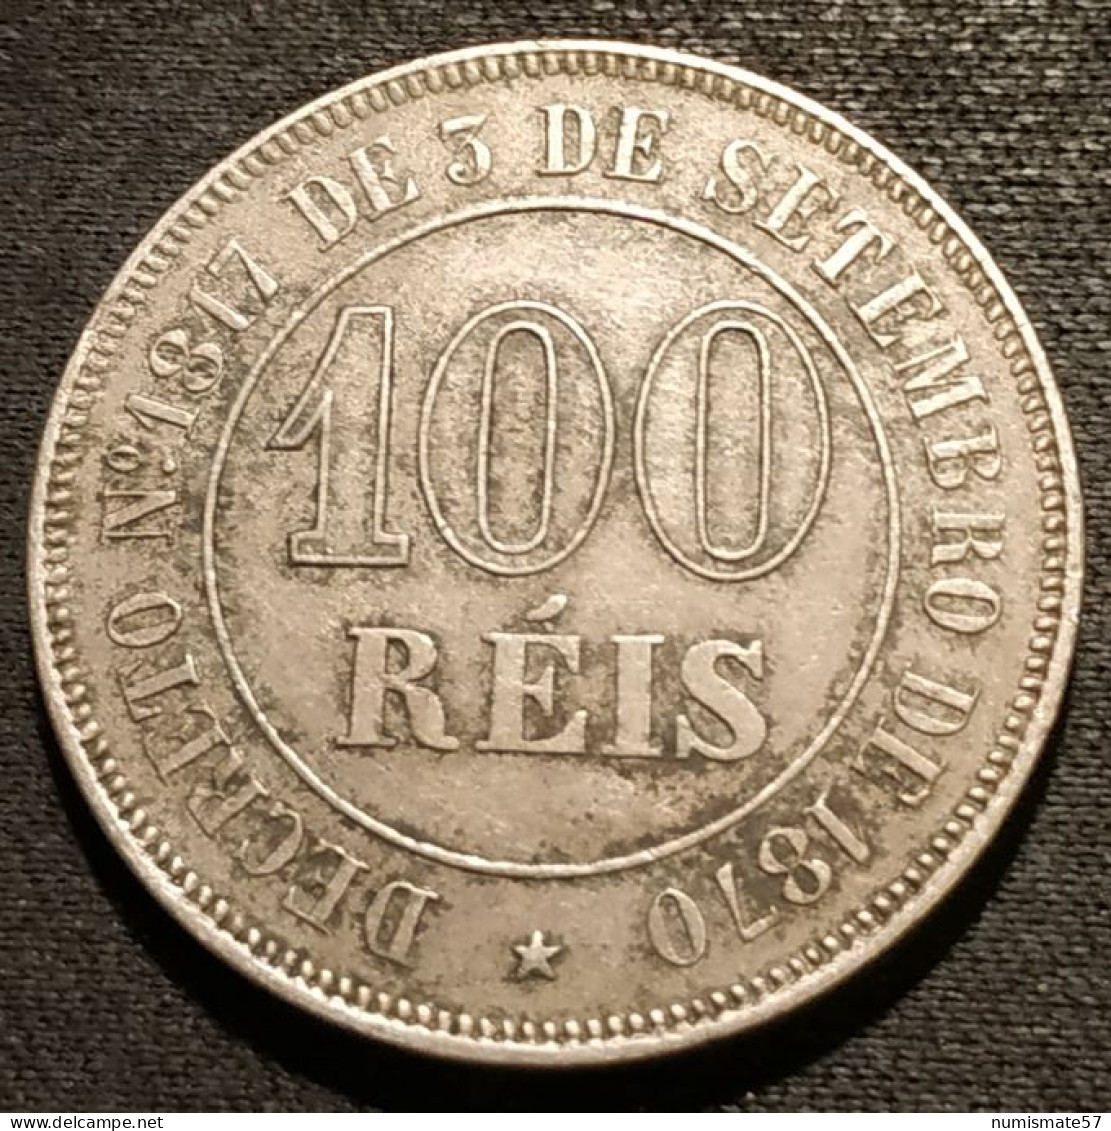 BRESIL - 100 REIS 1871 - Pedro II - KM 477 - Brasil - Brazil - Brasilien